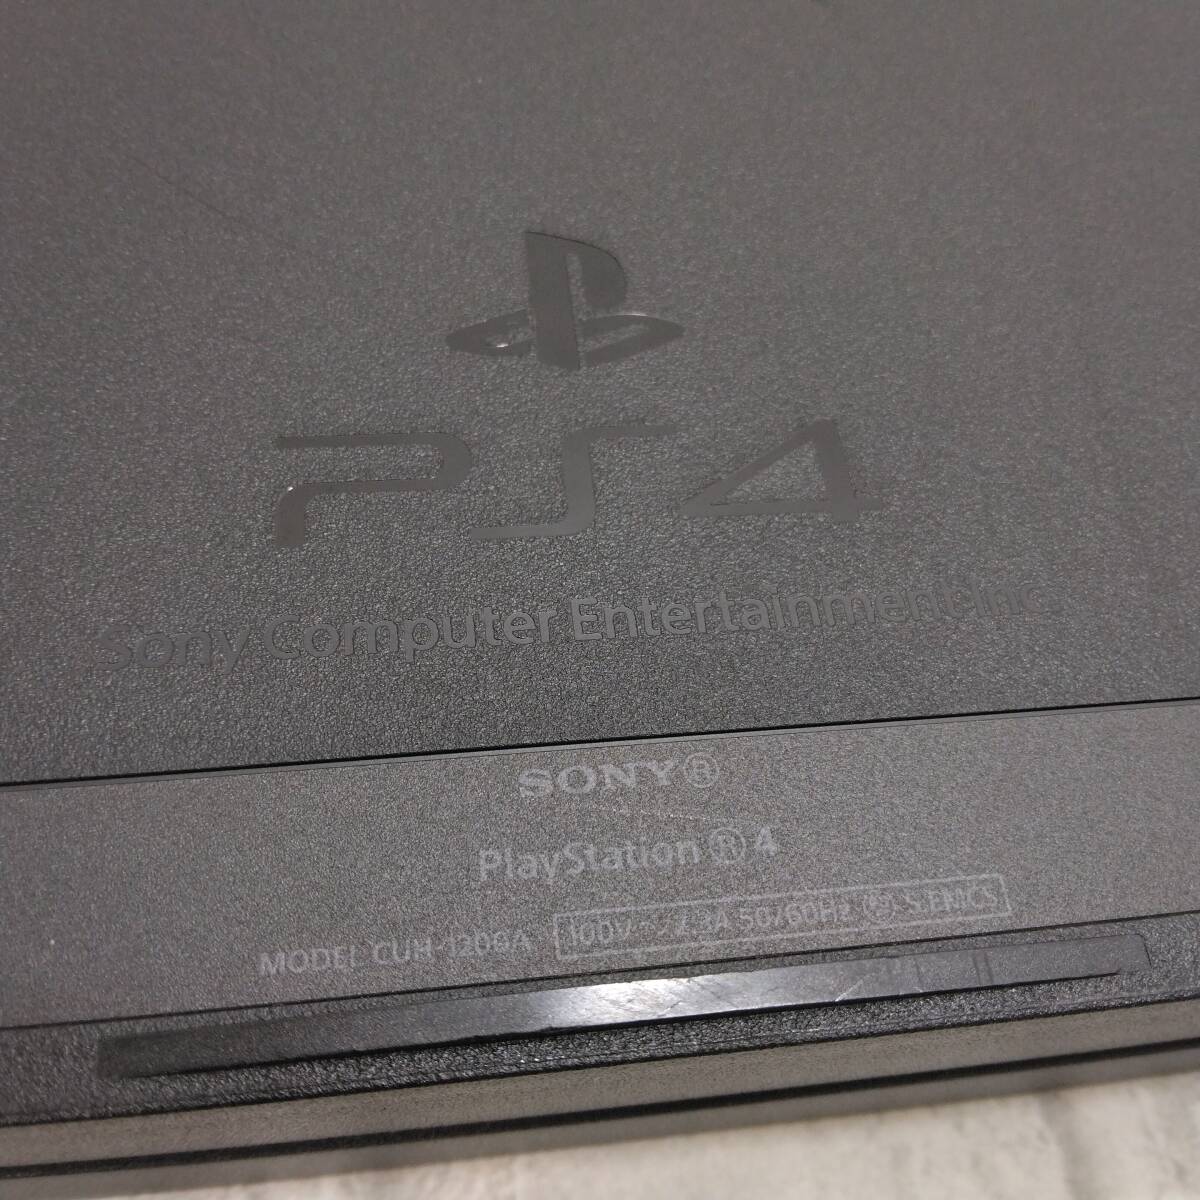 送料無料! SONY PlayStation4 CUH-1200A プレステ4 PS4本体 / CUH-ZCT2J ワイヤレスコントローラー 動作品 ジャンク扱い_画像5